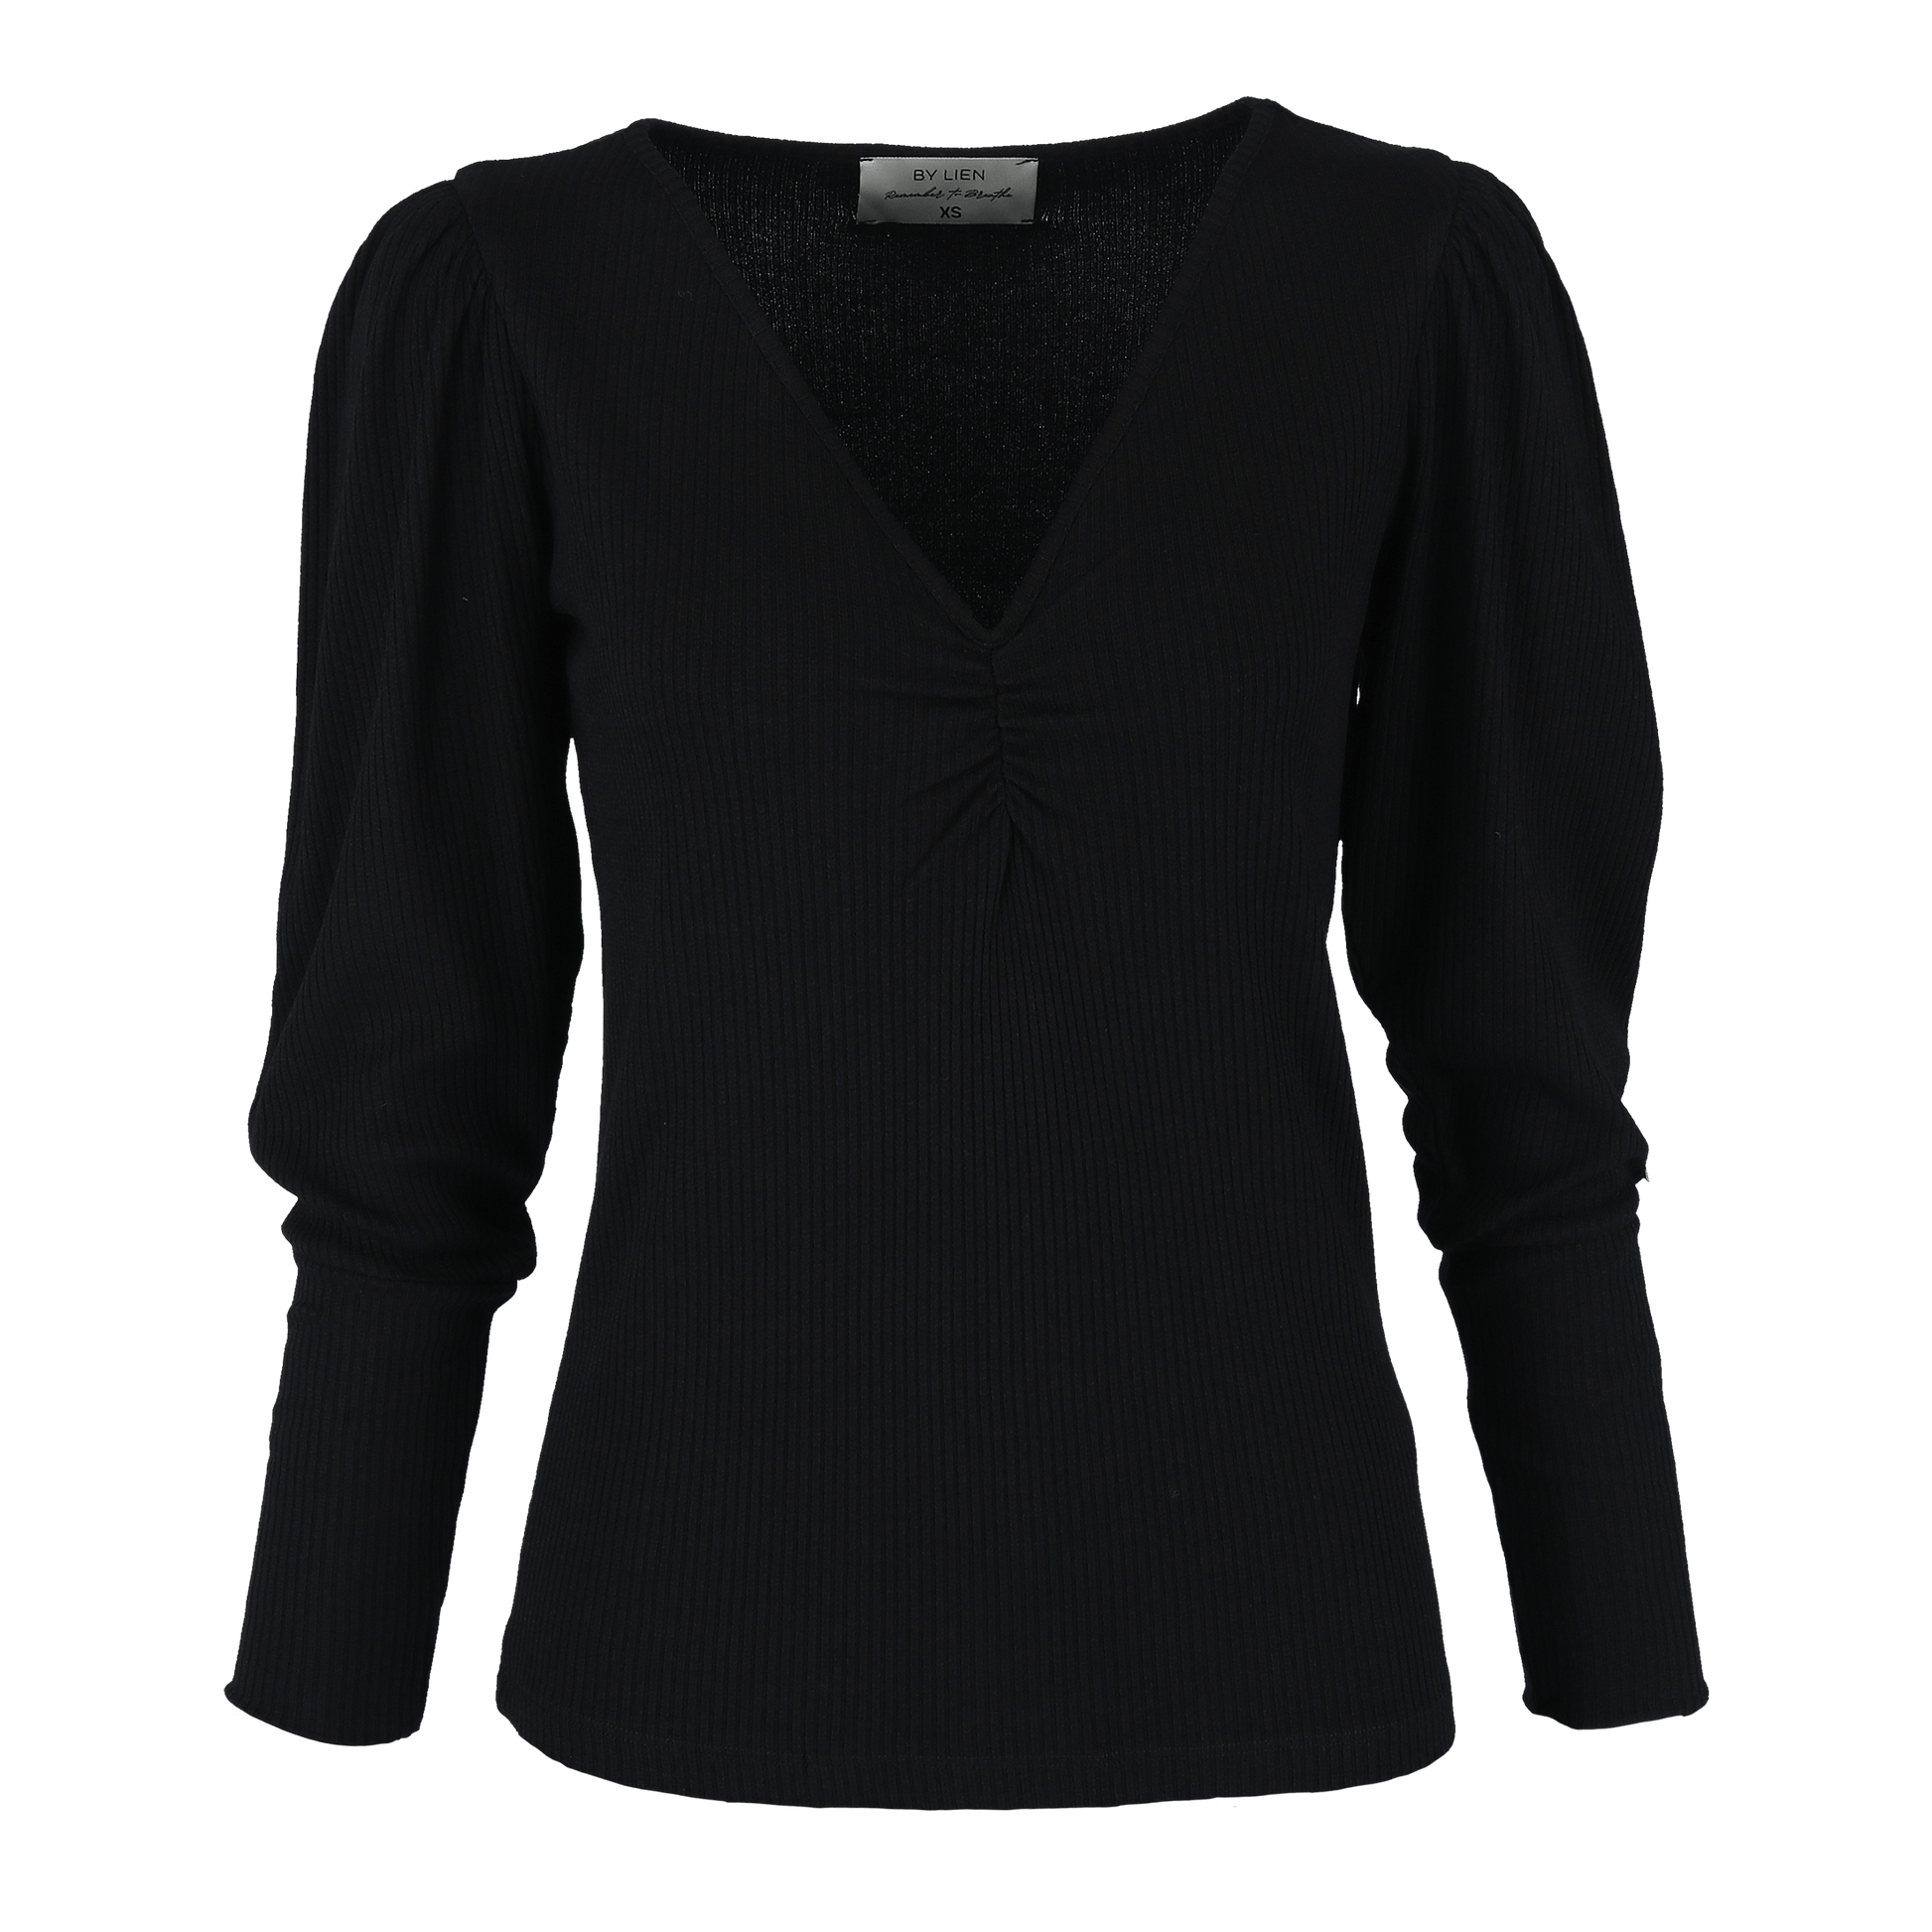 ByLien-Shop Peaceful Loungewear Genser - Black Onyx